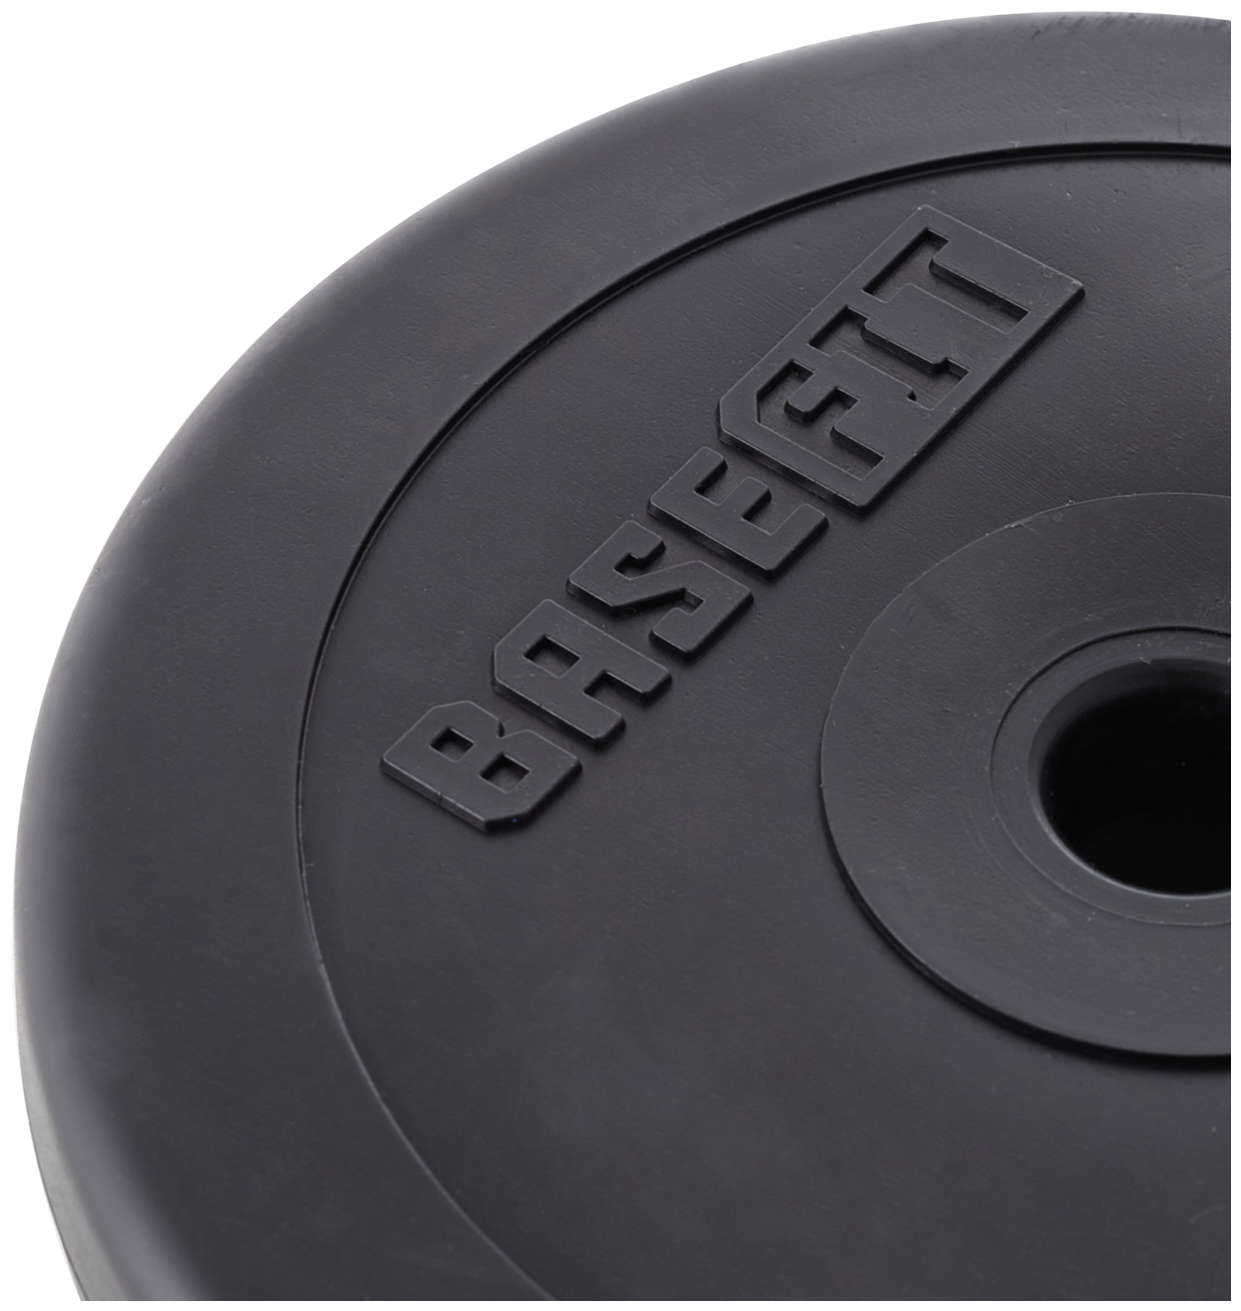 Диск пластиковый BASEFIT BB-203 5 кг, d=26 мм, черный